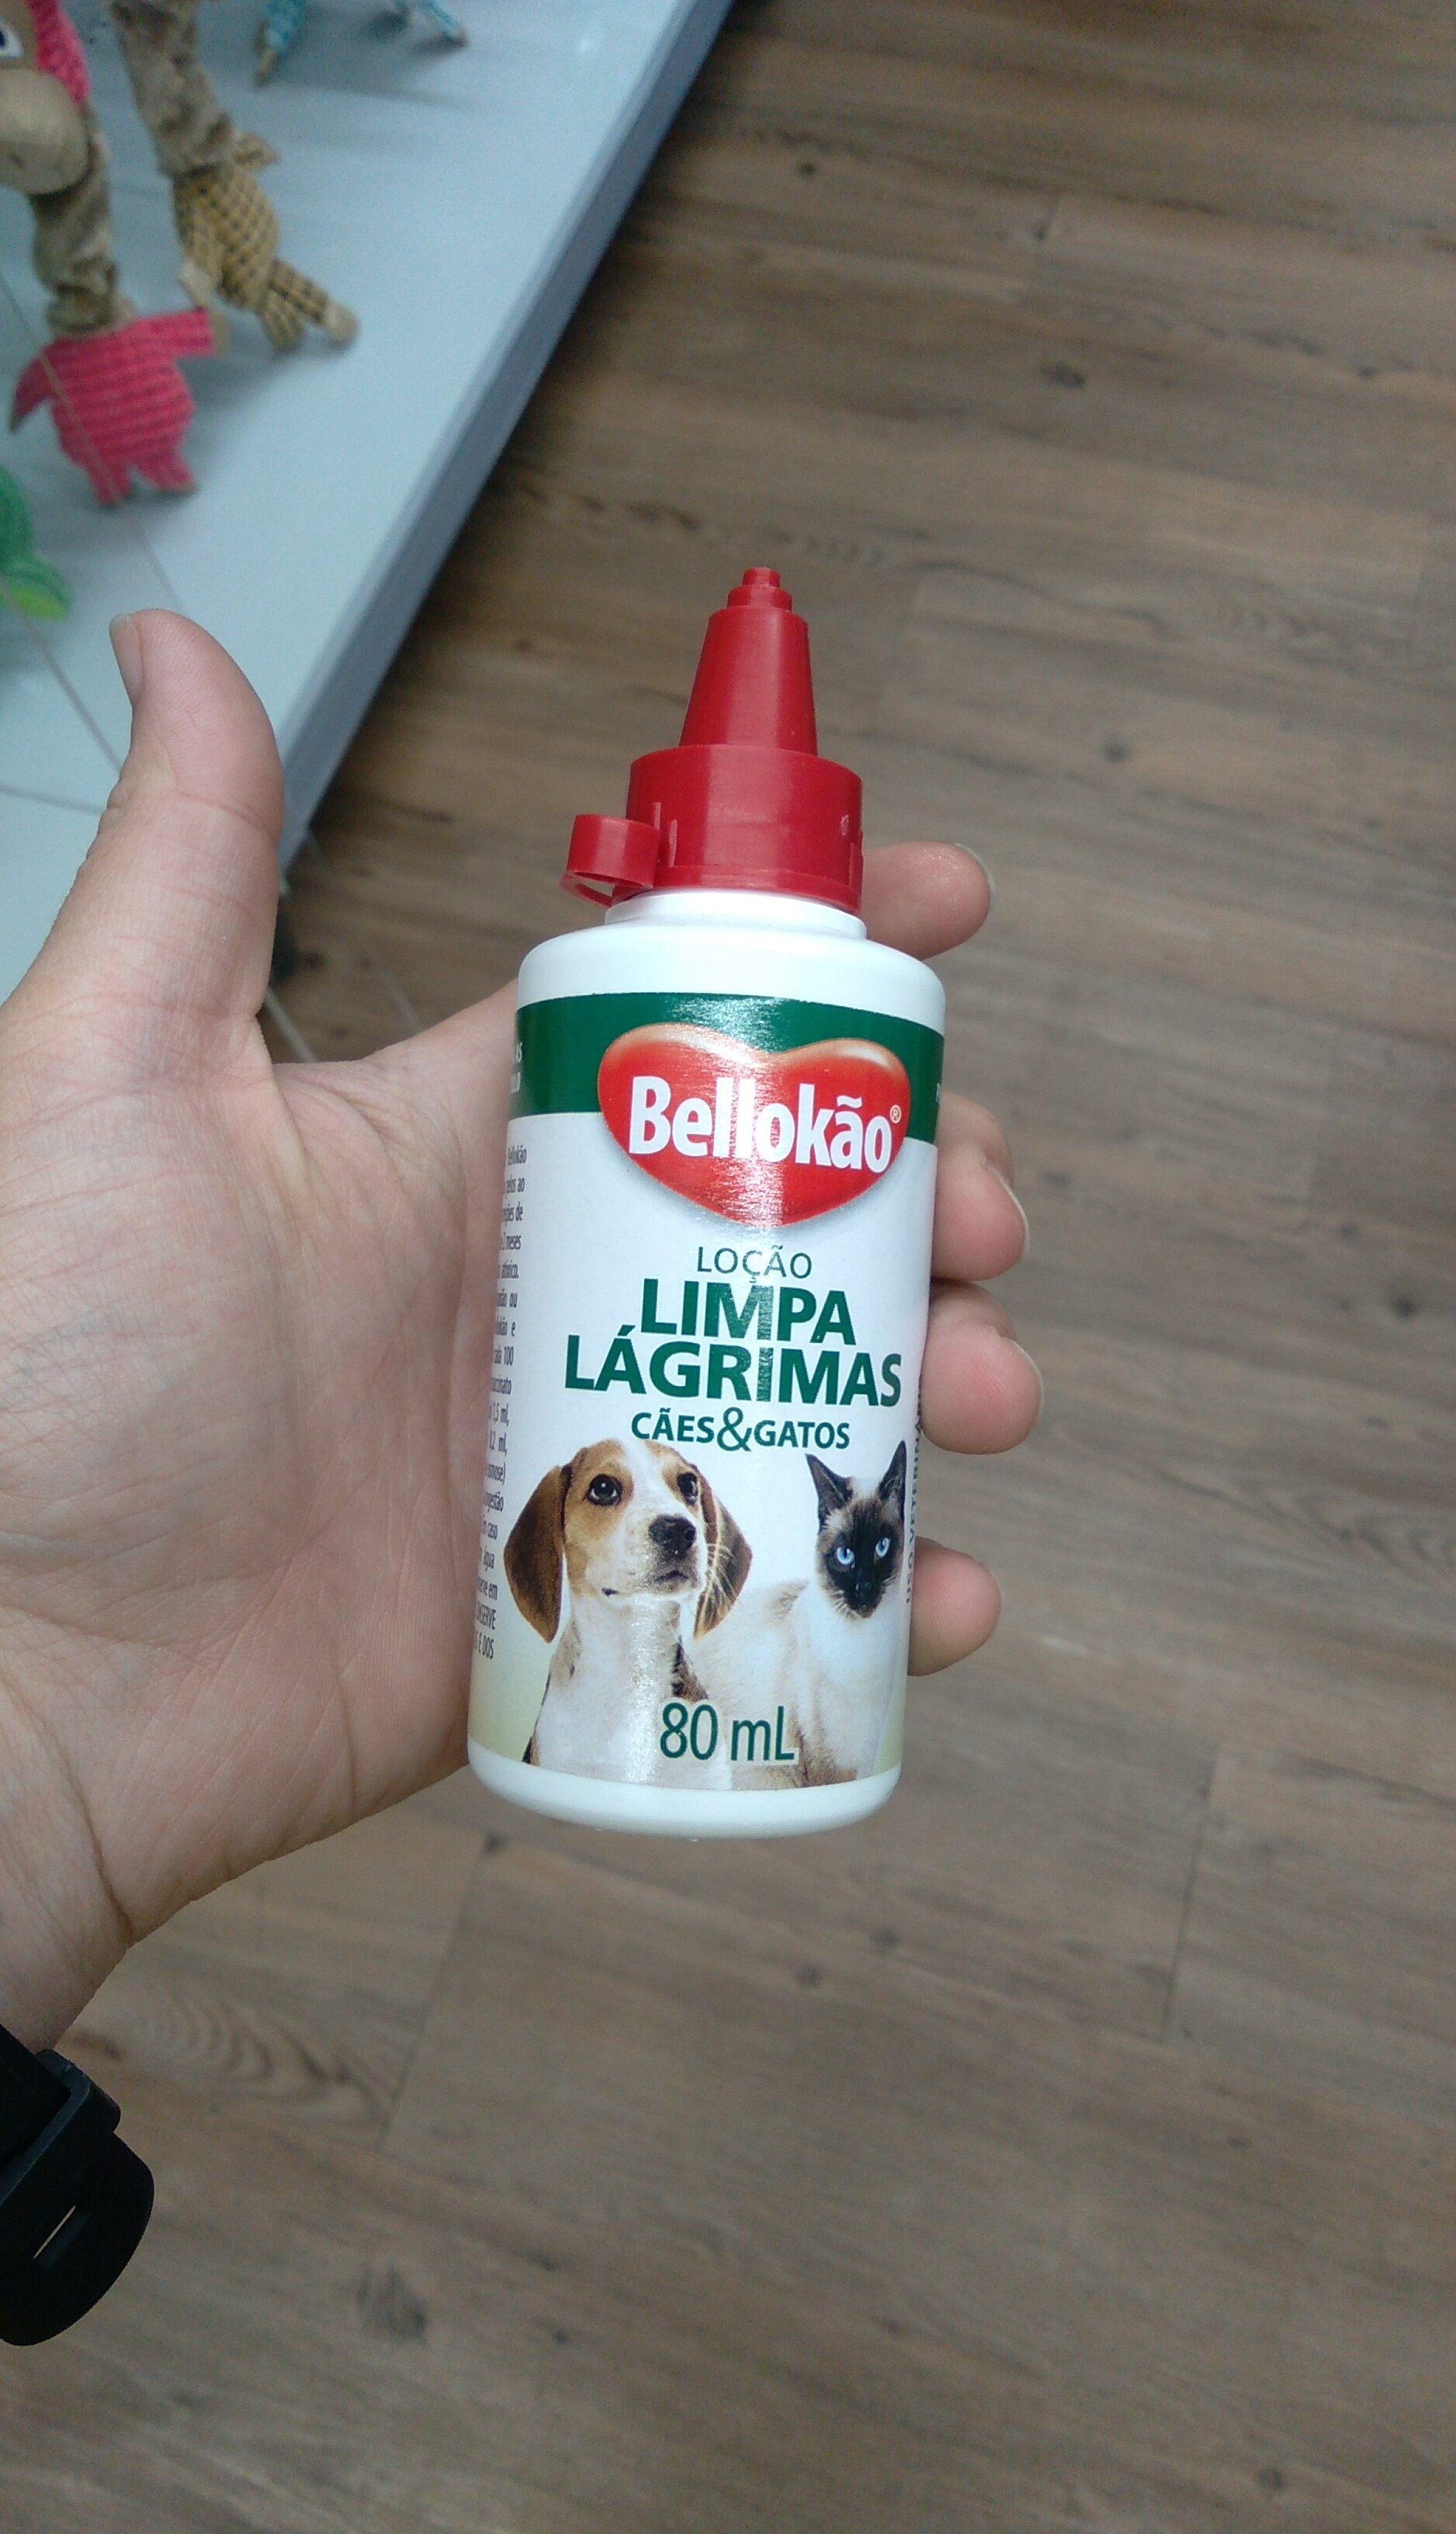 bellokao limpa lágrimas - Product - pt